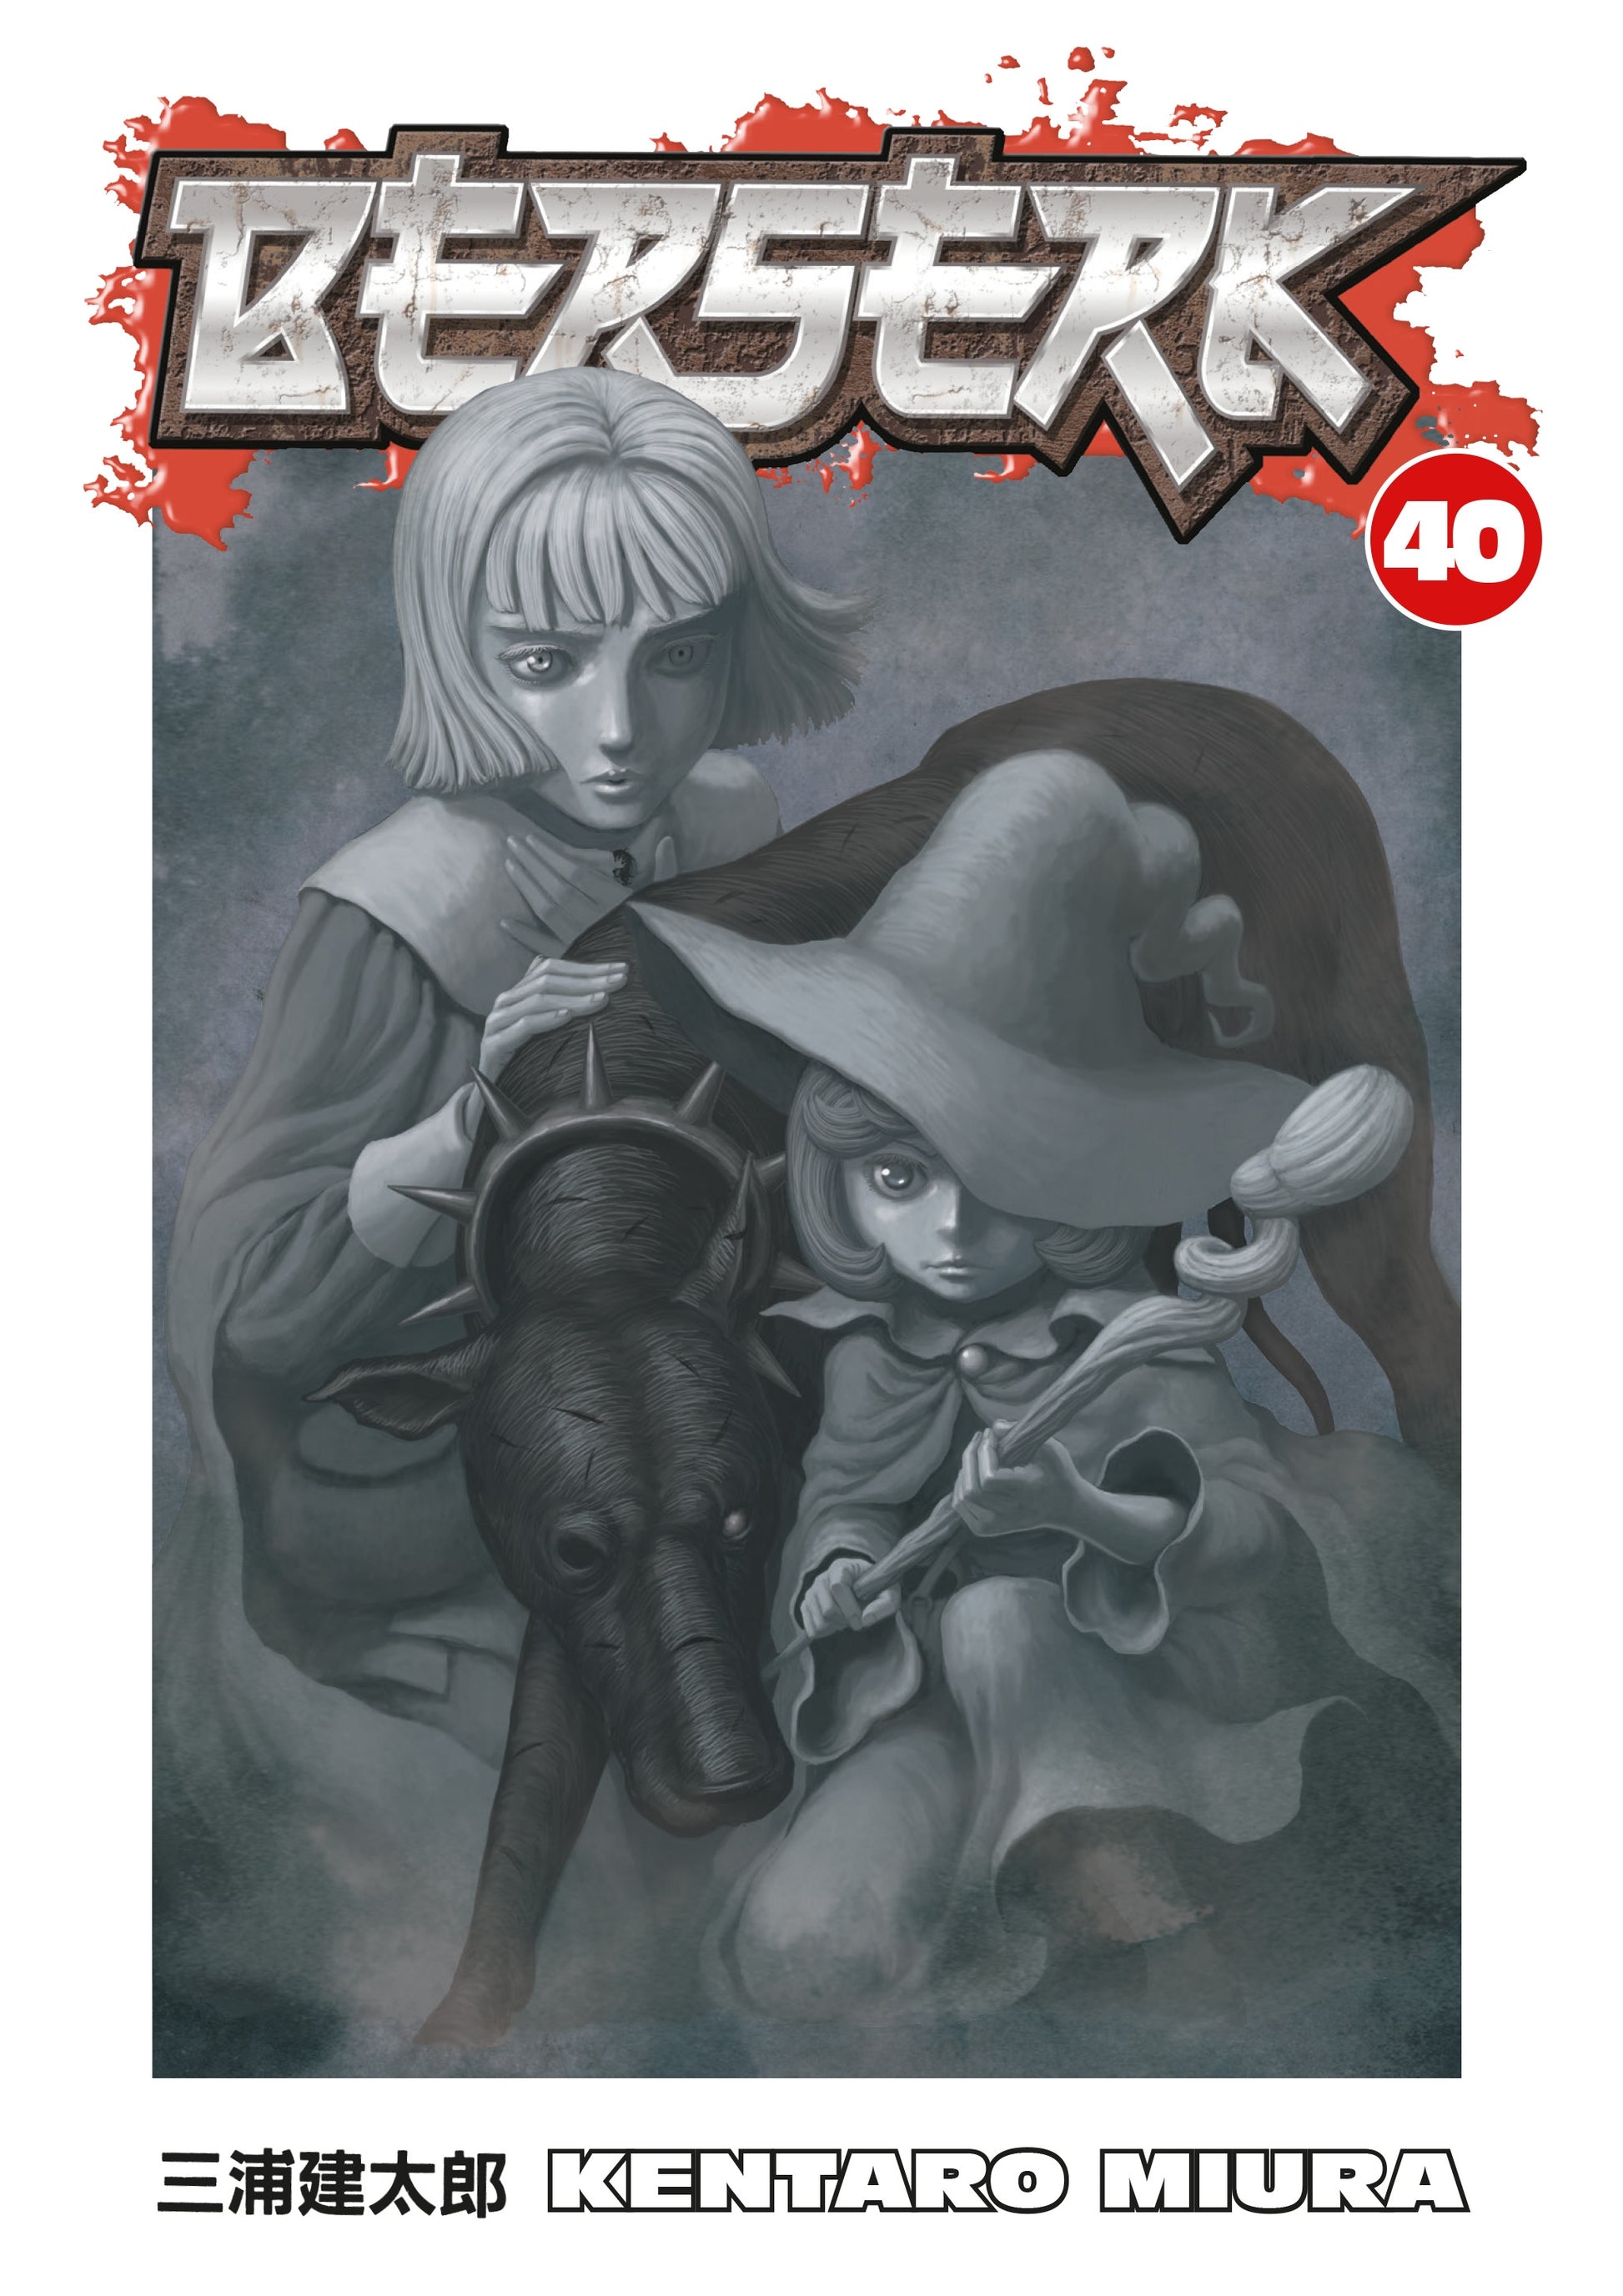 Berserk Volume 40 - Manga Warehouse